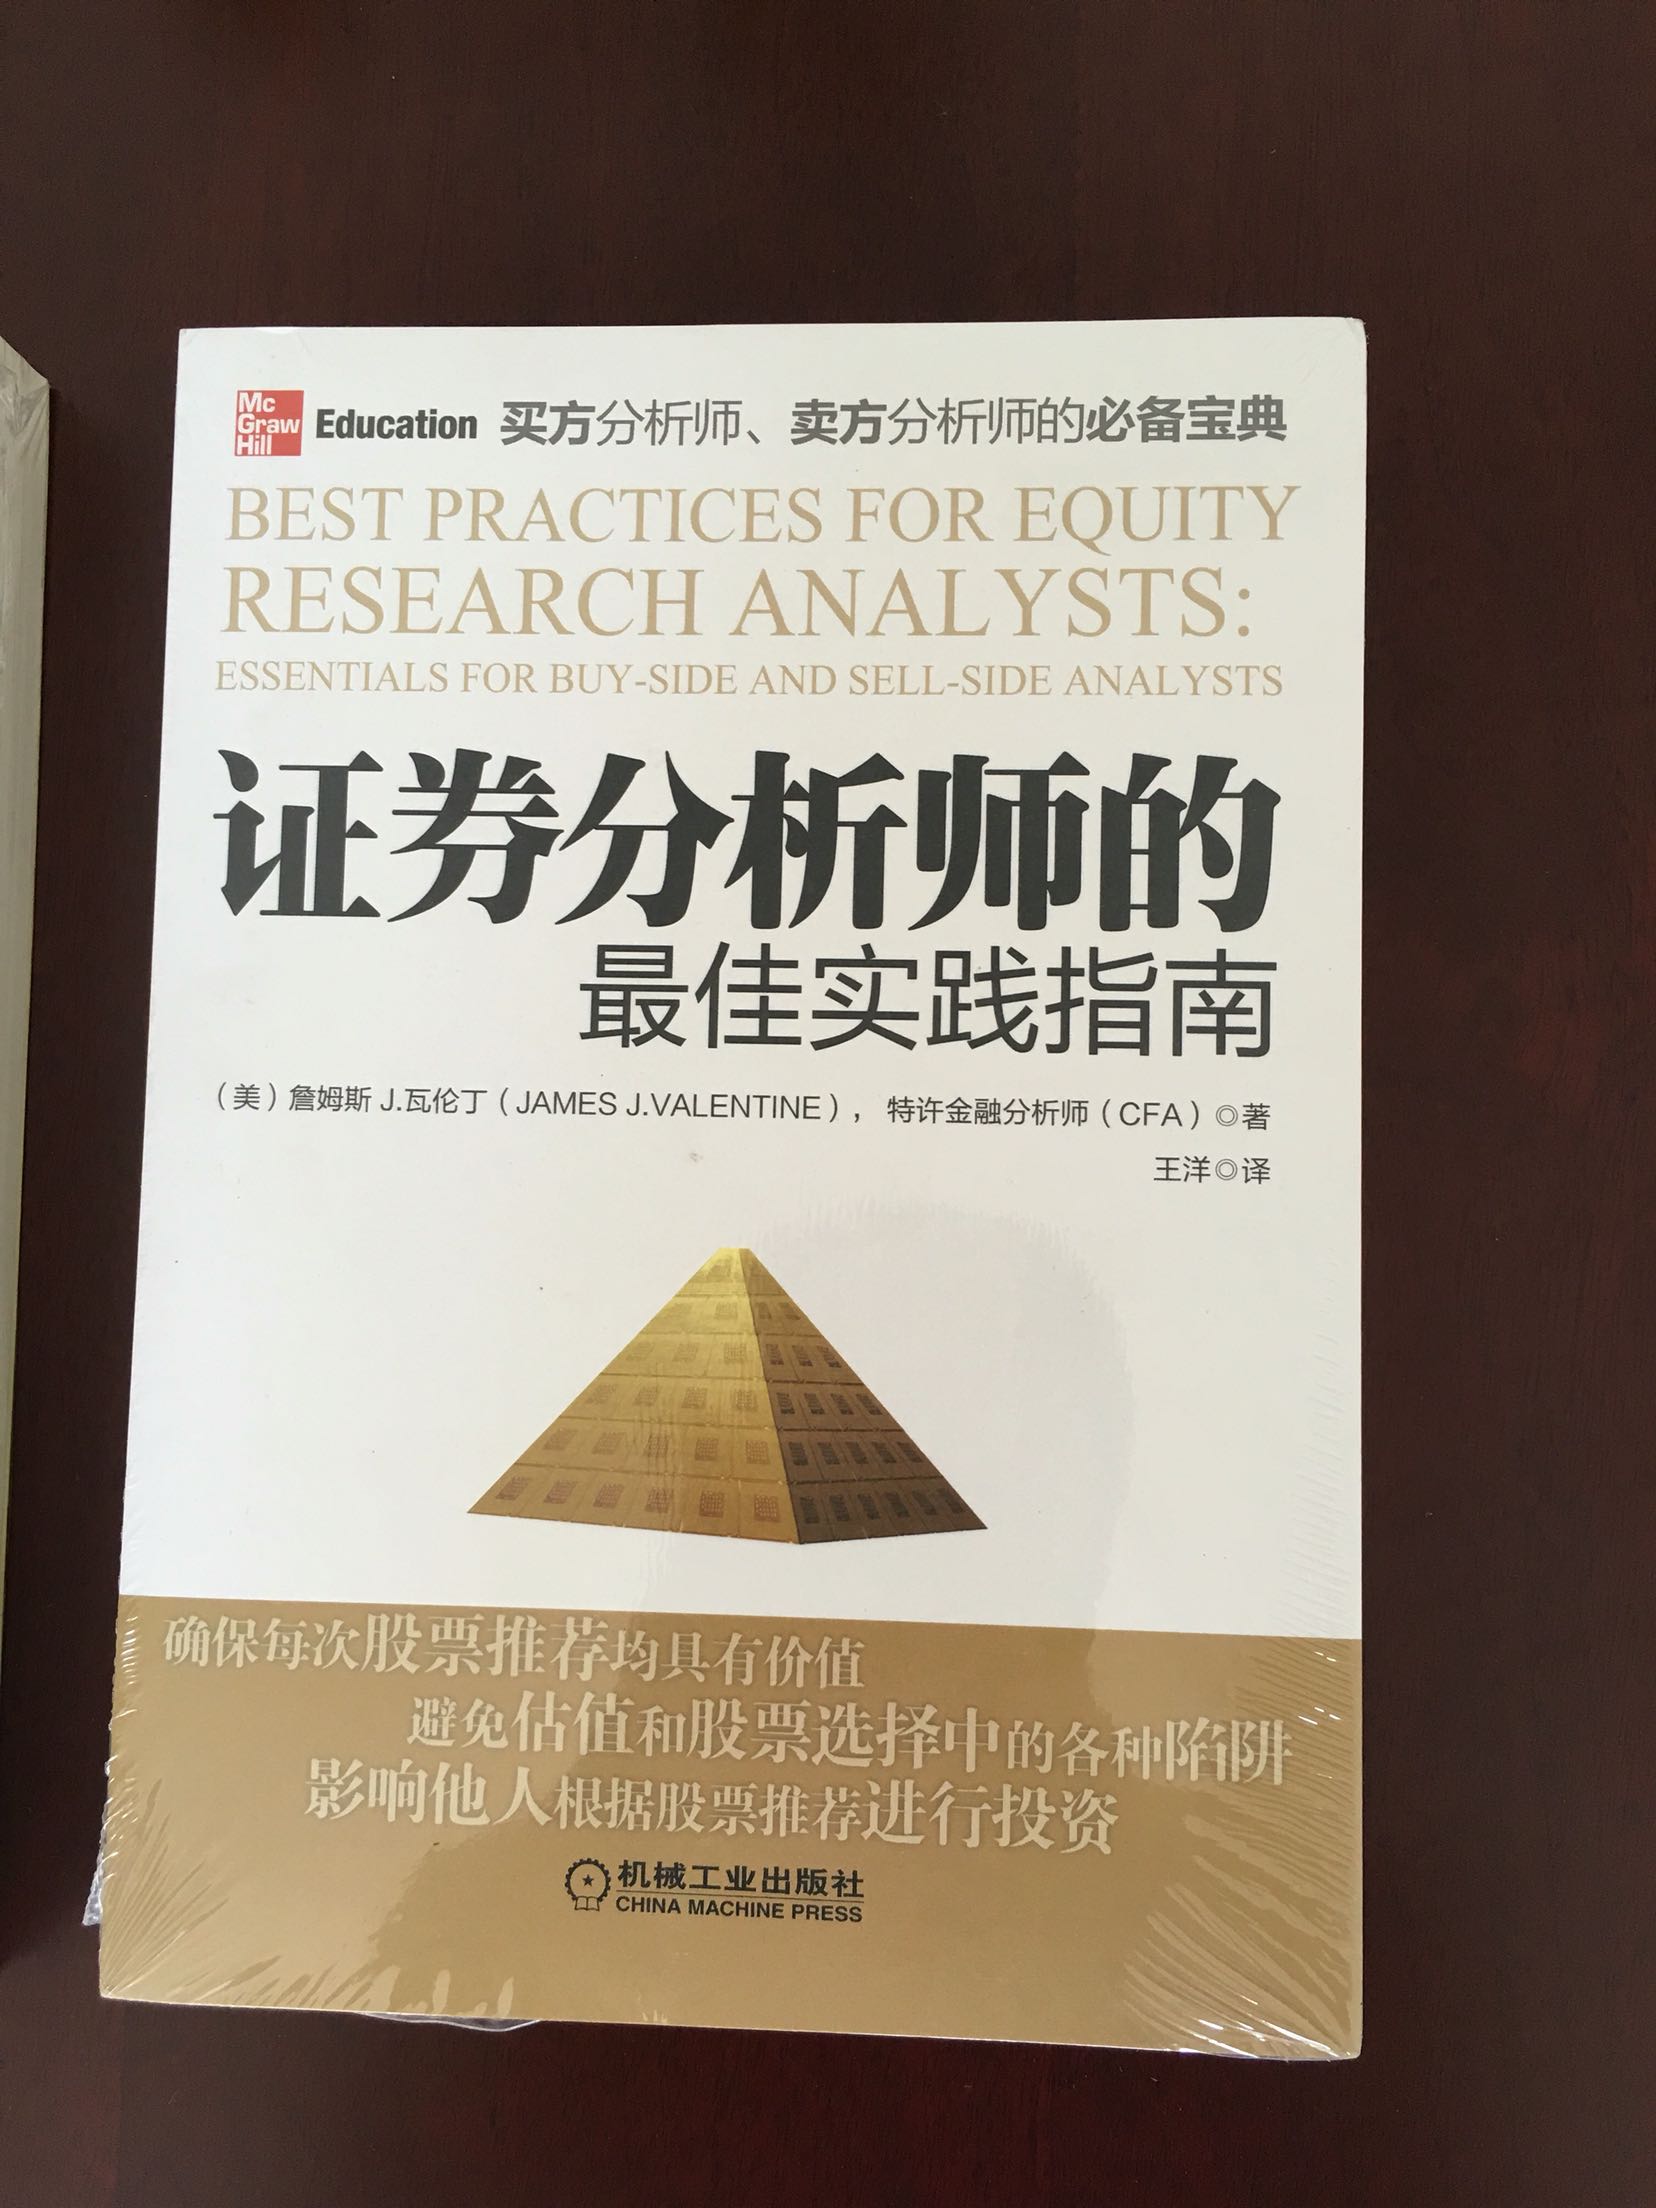 不错，学经济学的都应该看看这本书！推荐给大家！如果有志考证券分析师，整本书都是对你有帮助的！